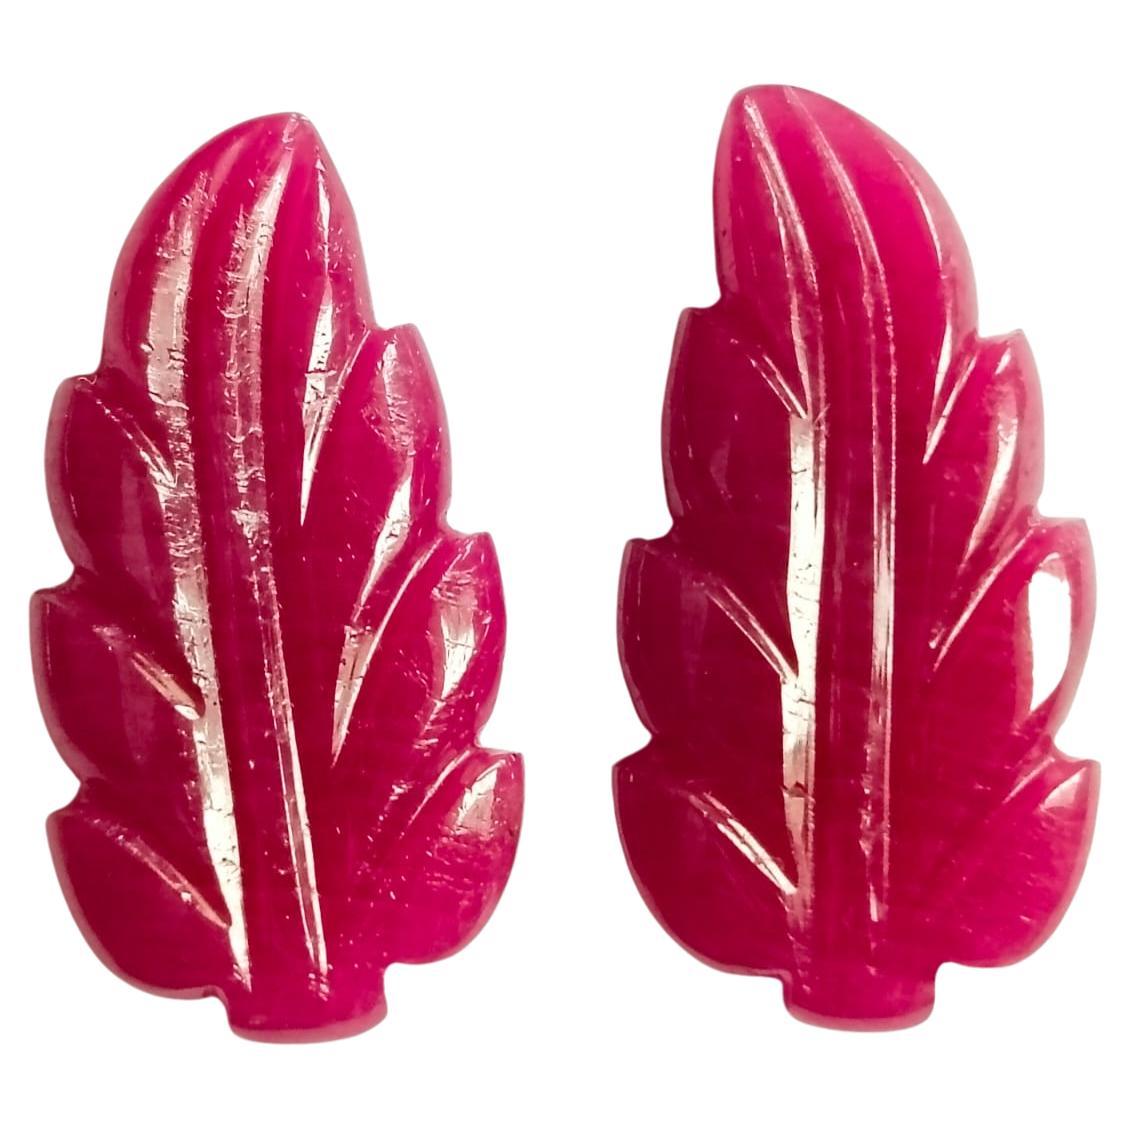 Elegant 21.75 Carat Ruby Carving Leaf Shape Pair Loose Gemstone  For Sale